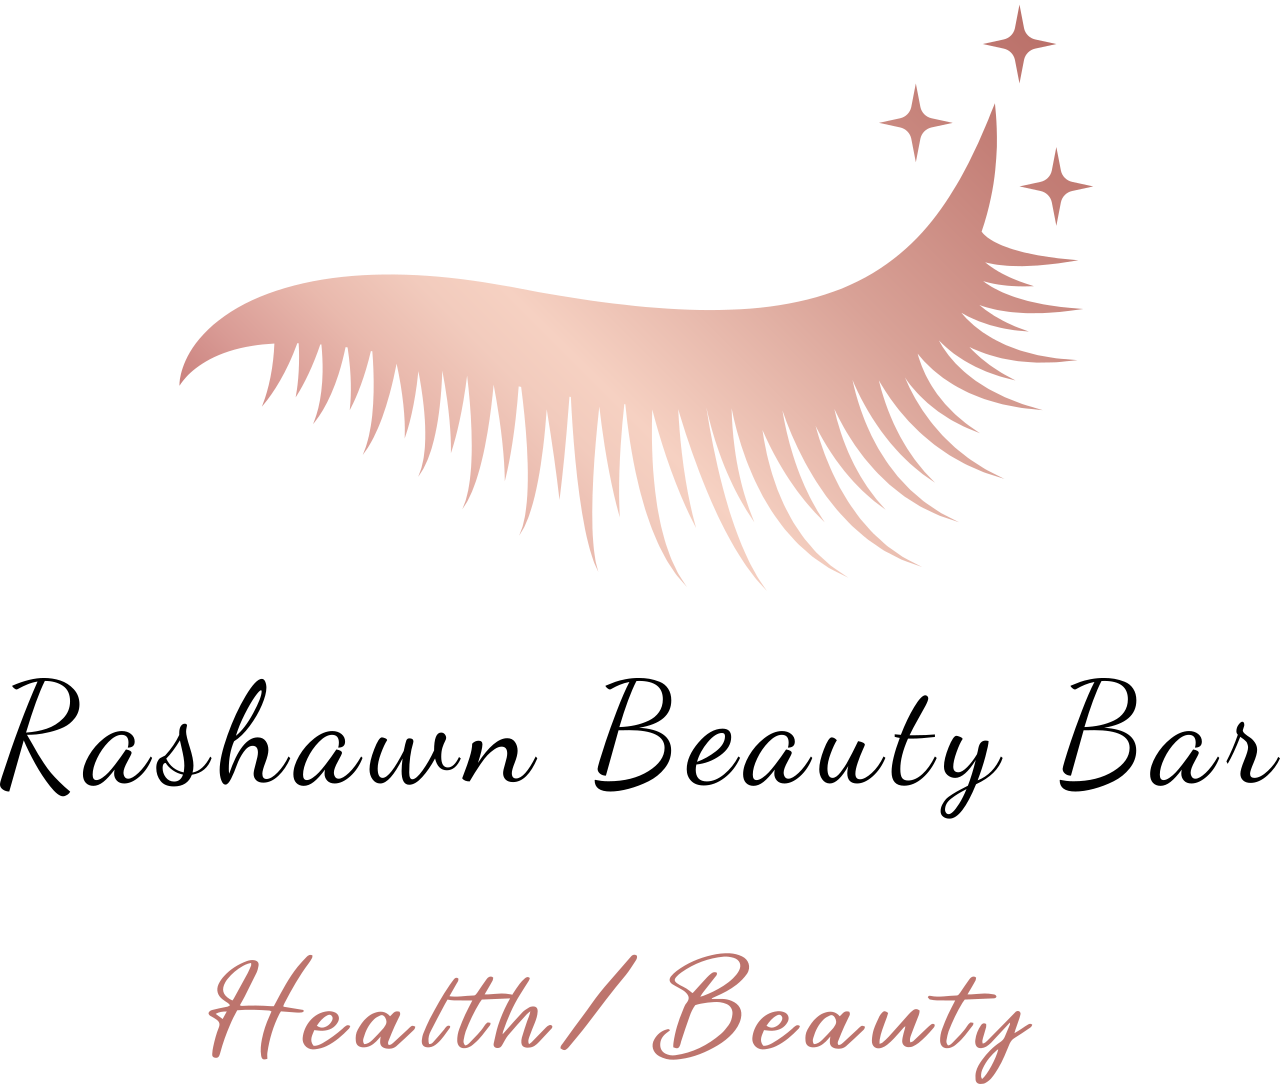 Rashawn Beauty Bar L.L.C.'s logo